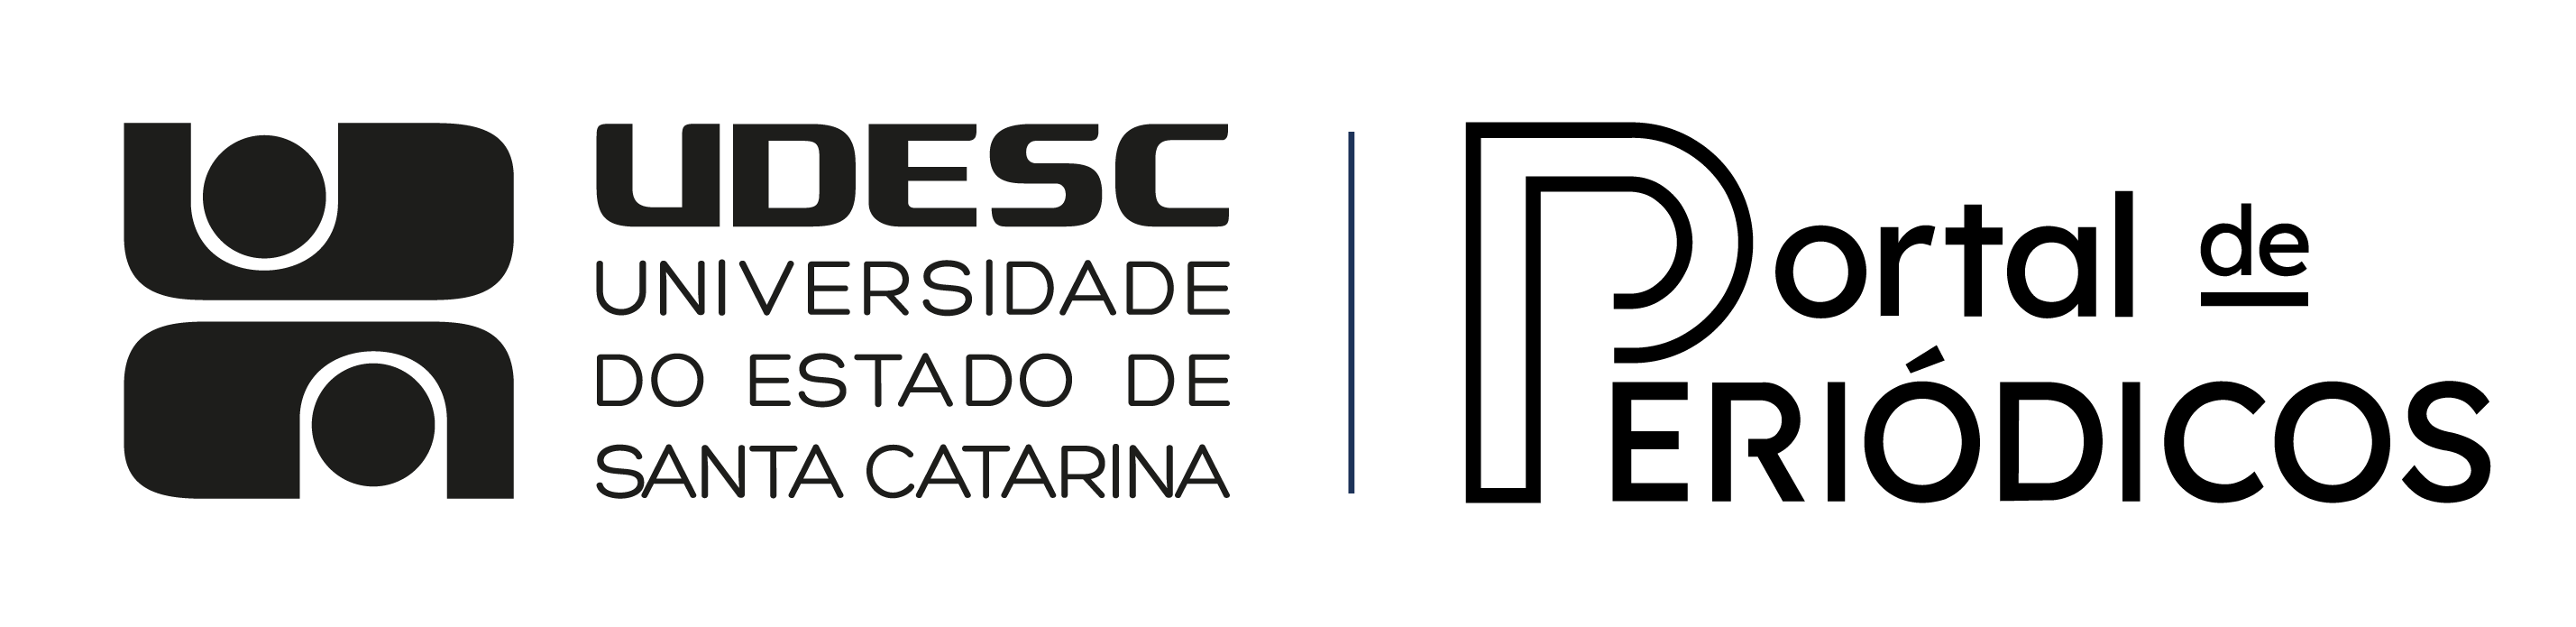 Logo da Udesc e escrita textual do Portal de Periódicos